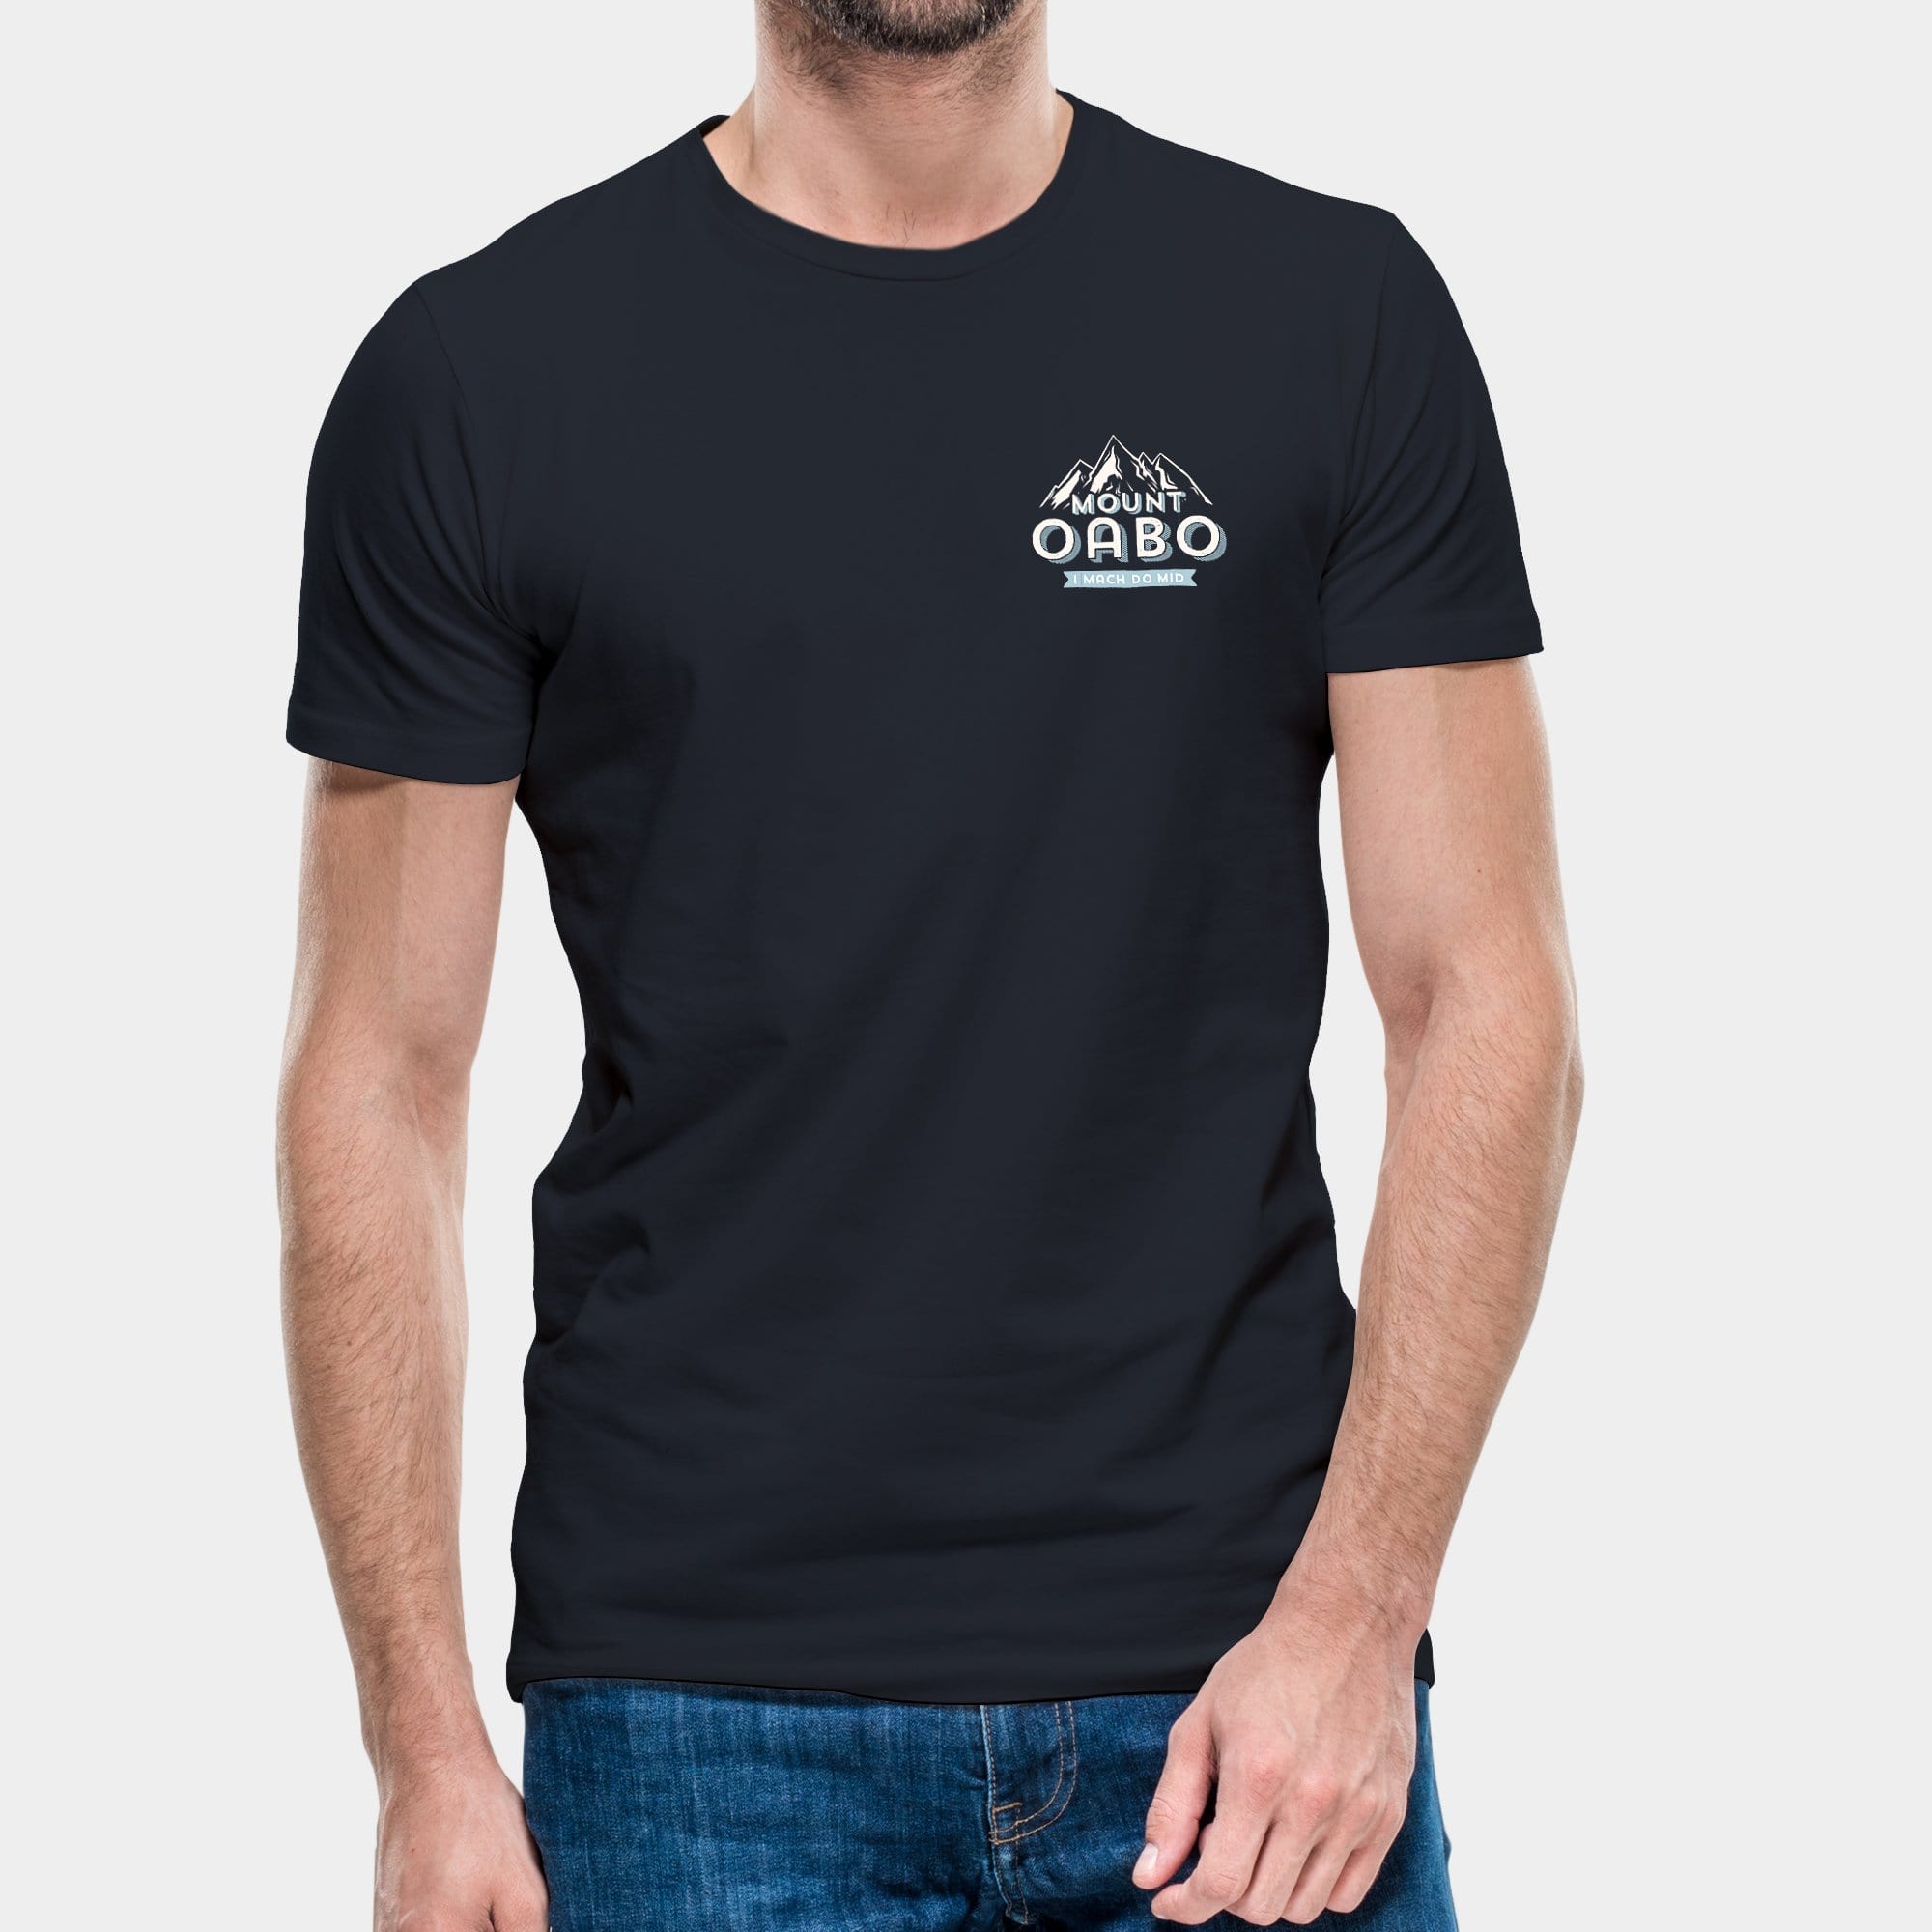 Projekt Herren-T-Shirt "Mount Oabo" S / navyblau - aus nachhaltiger und fairer Produktion